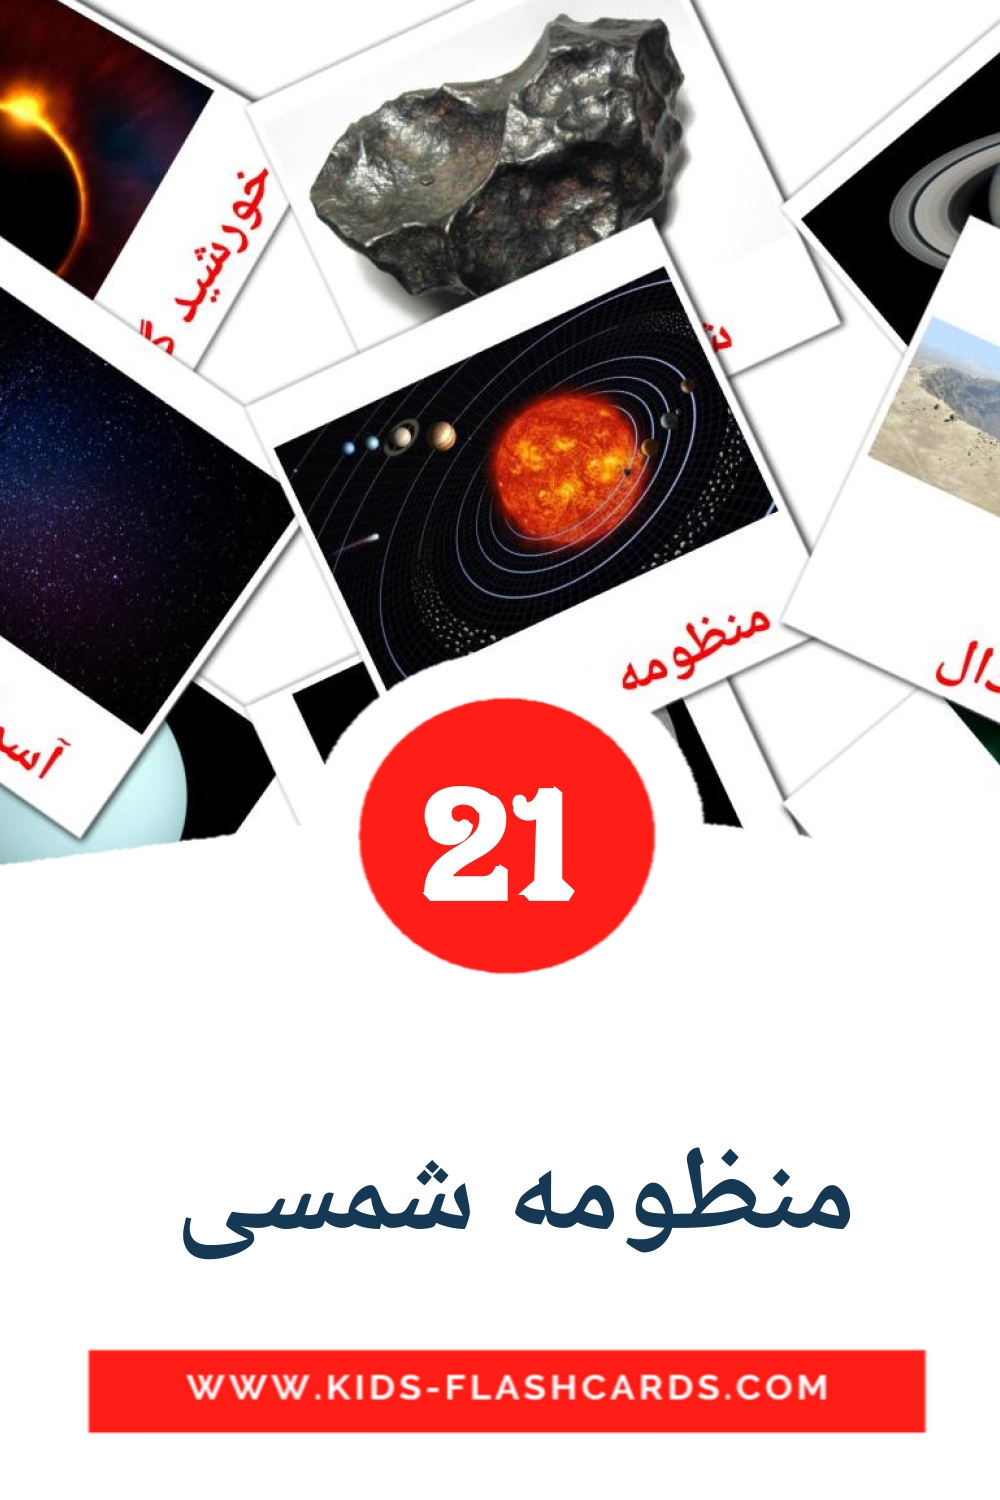 21 Cartões com Imagens de منظومه شمسی  para Jardim de Infância em persa